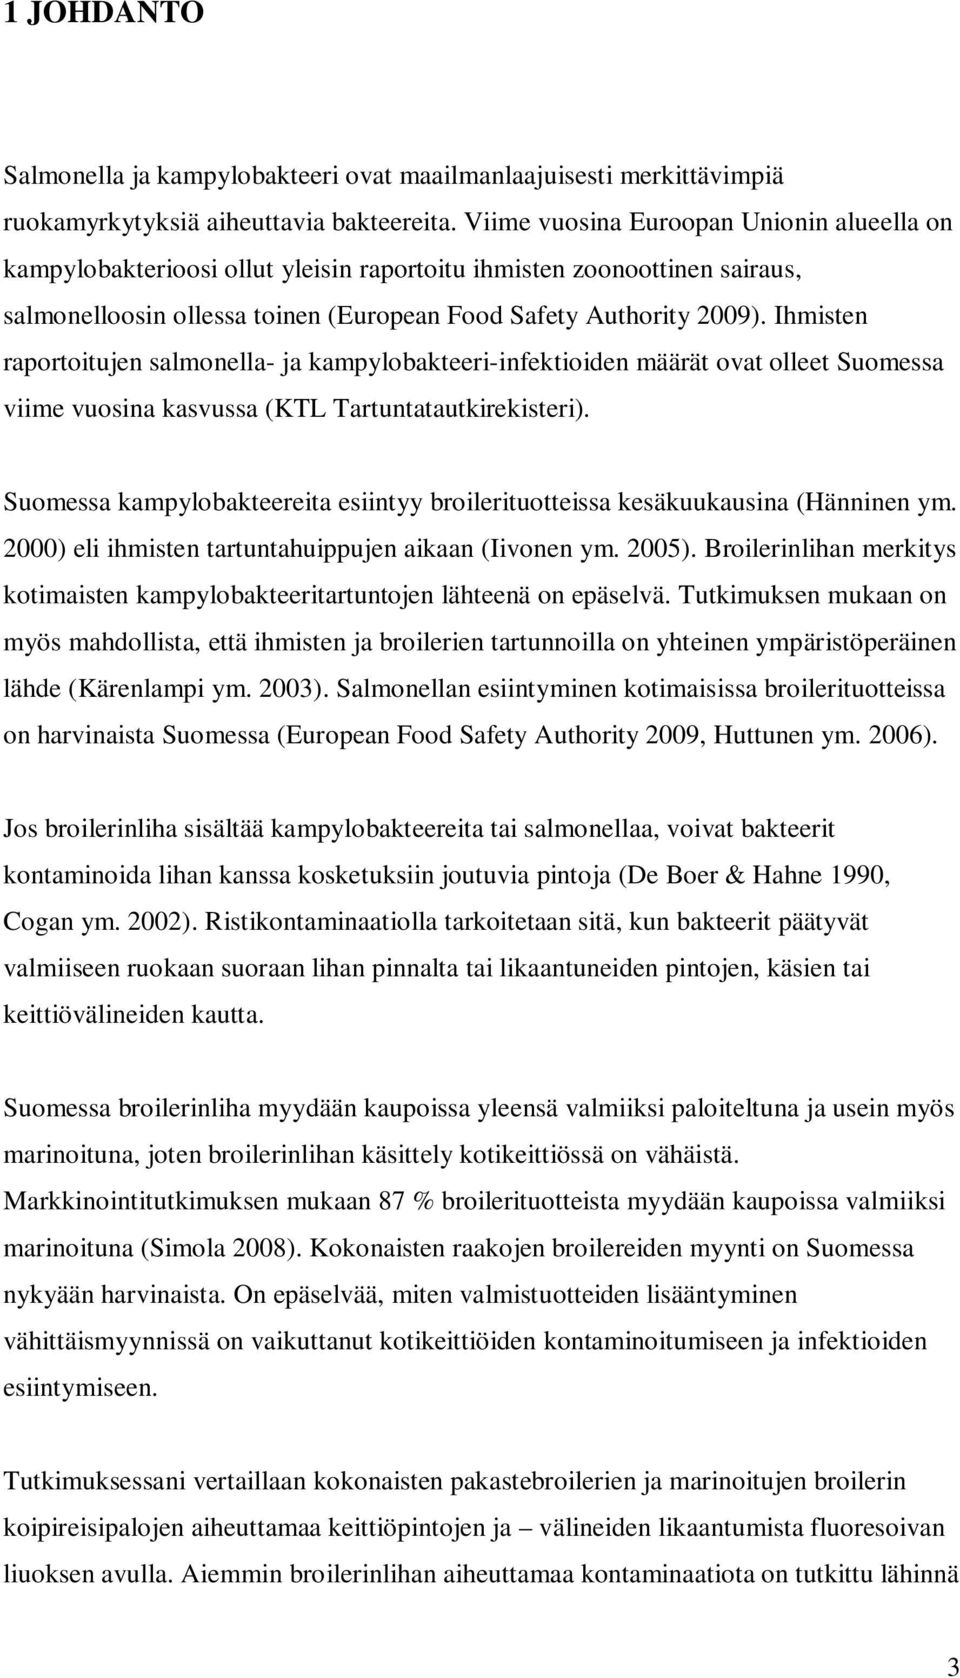 Ihmisten raportoitujen salmonella- ja kampylobakteeri-infektioiden määrät ovat olleet Suomessa viime vuosina kasvussa (KTL Tartuntatautkirekisteri).